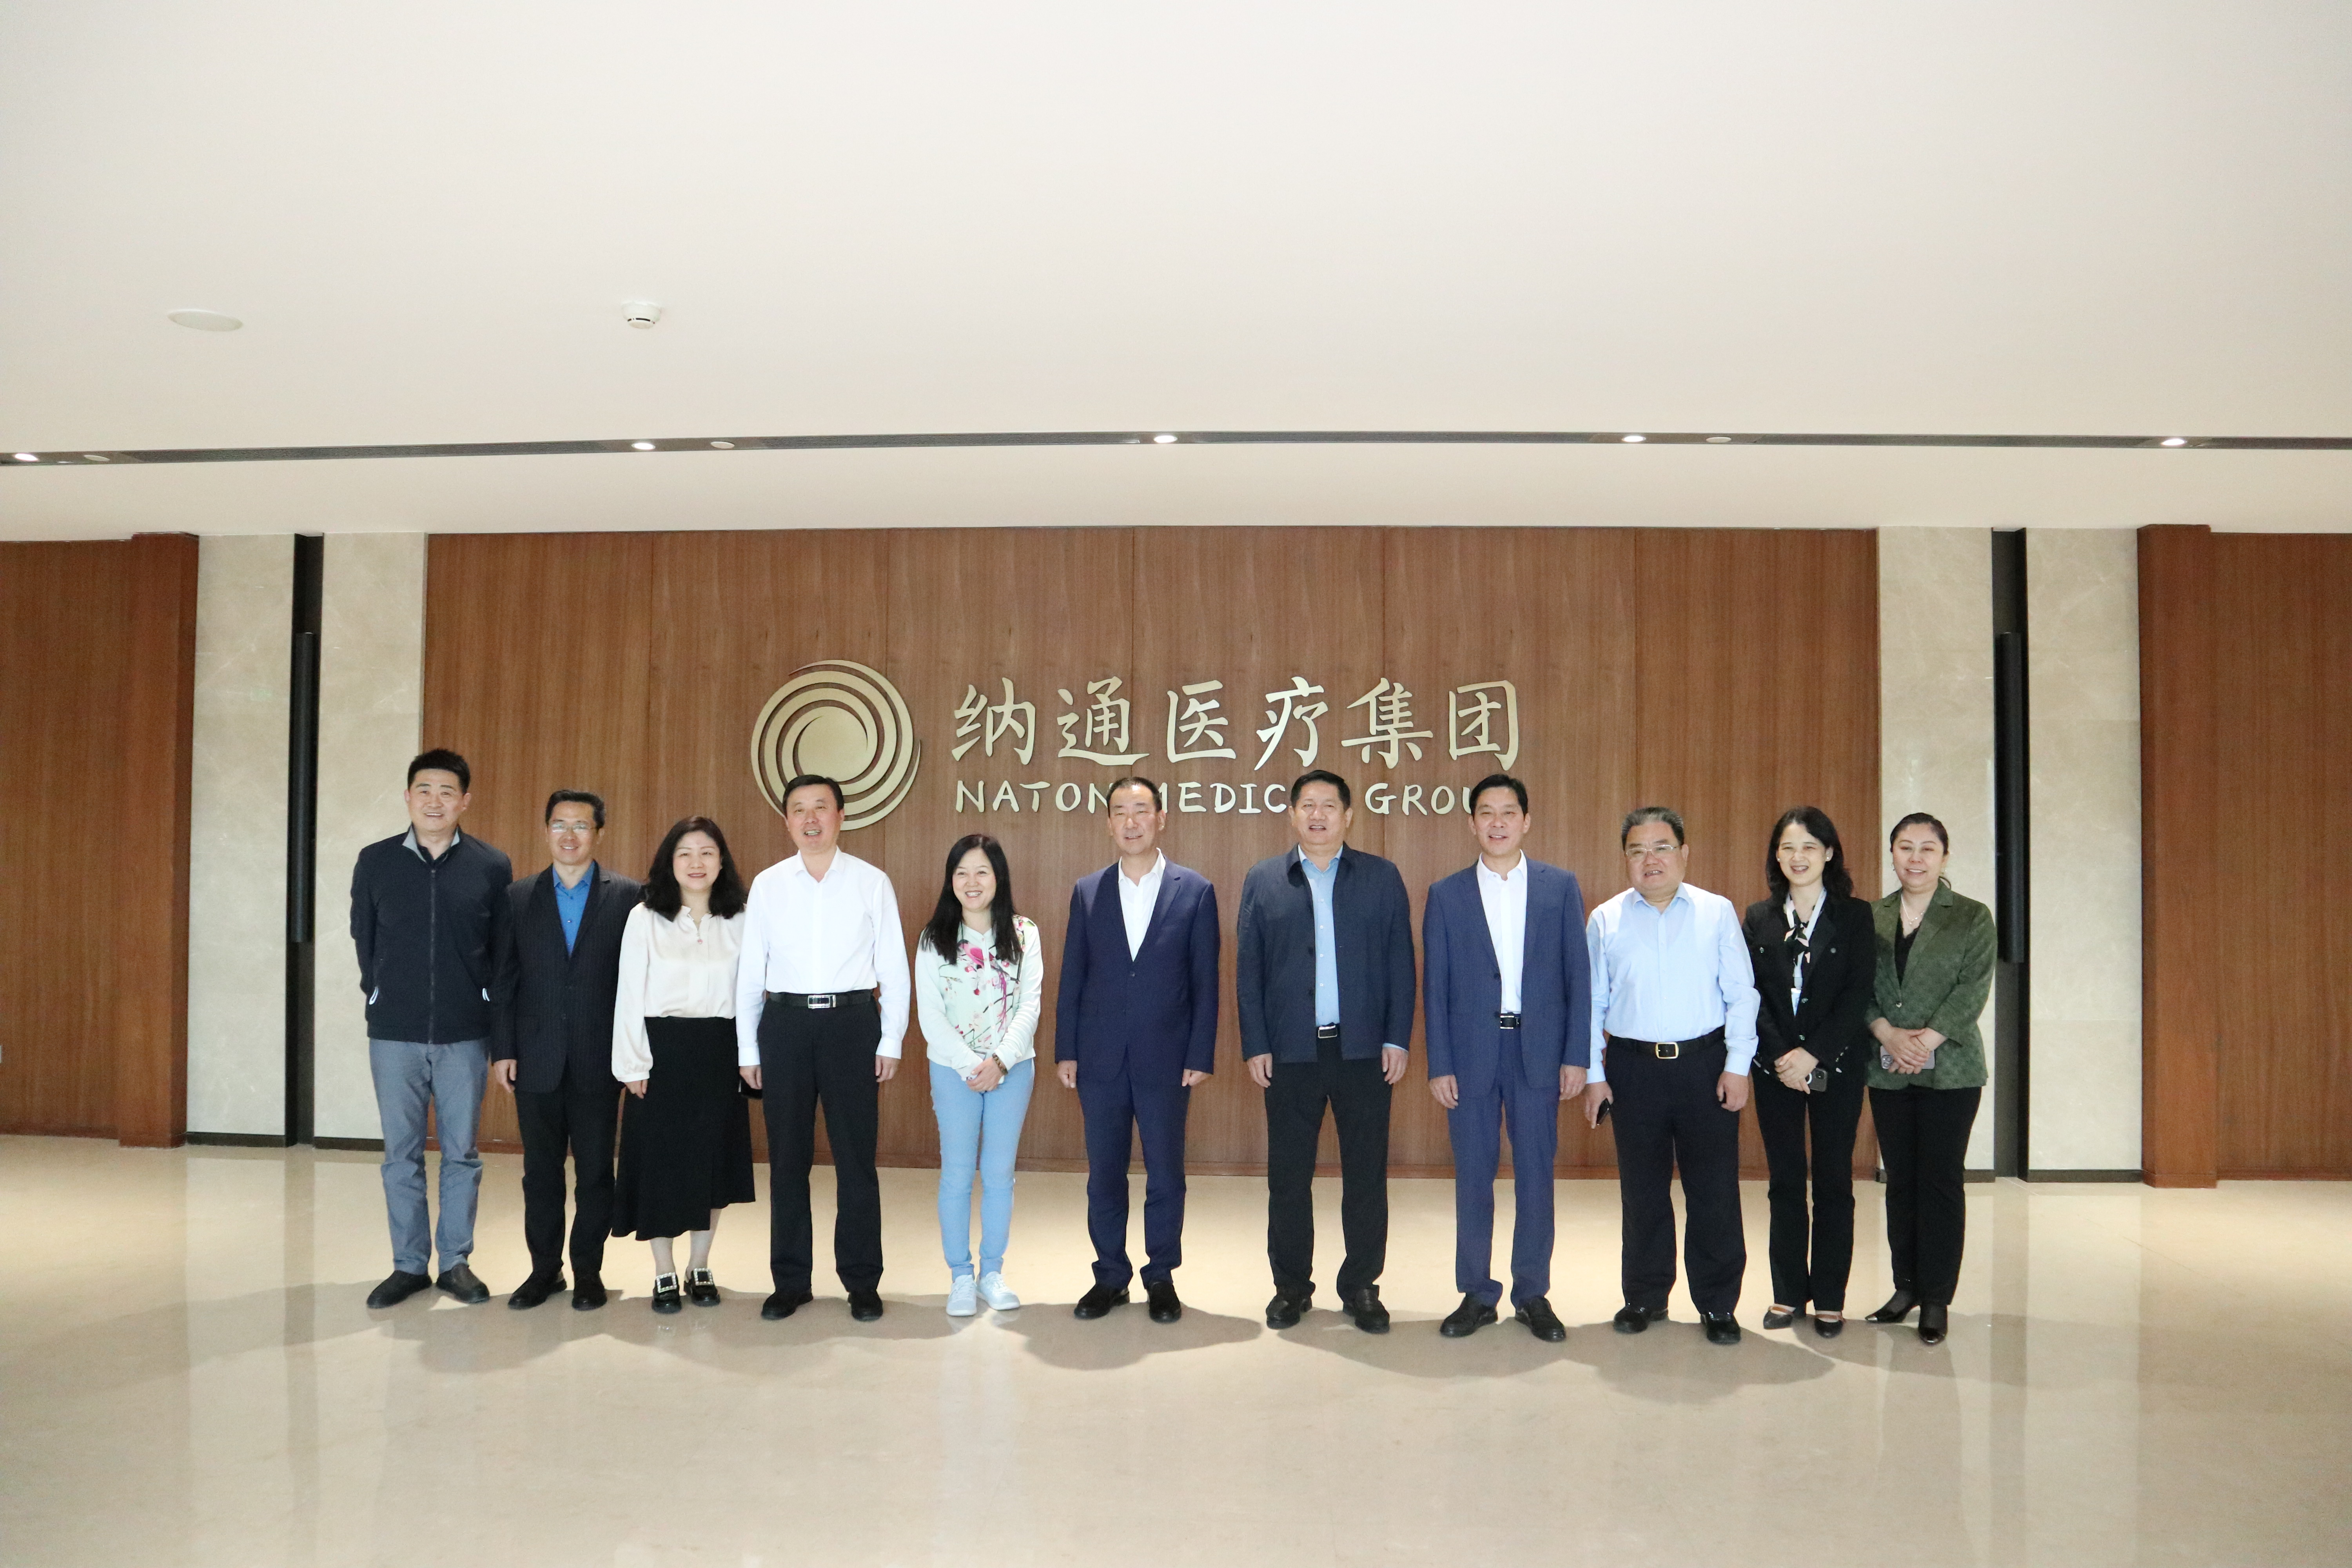 中国中小企业协会中外企业家分会与泰山区领导一行到访纳通科技集团